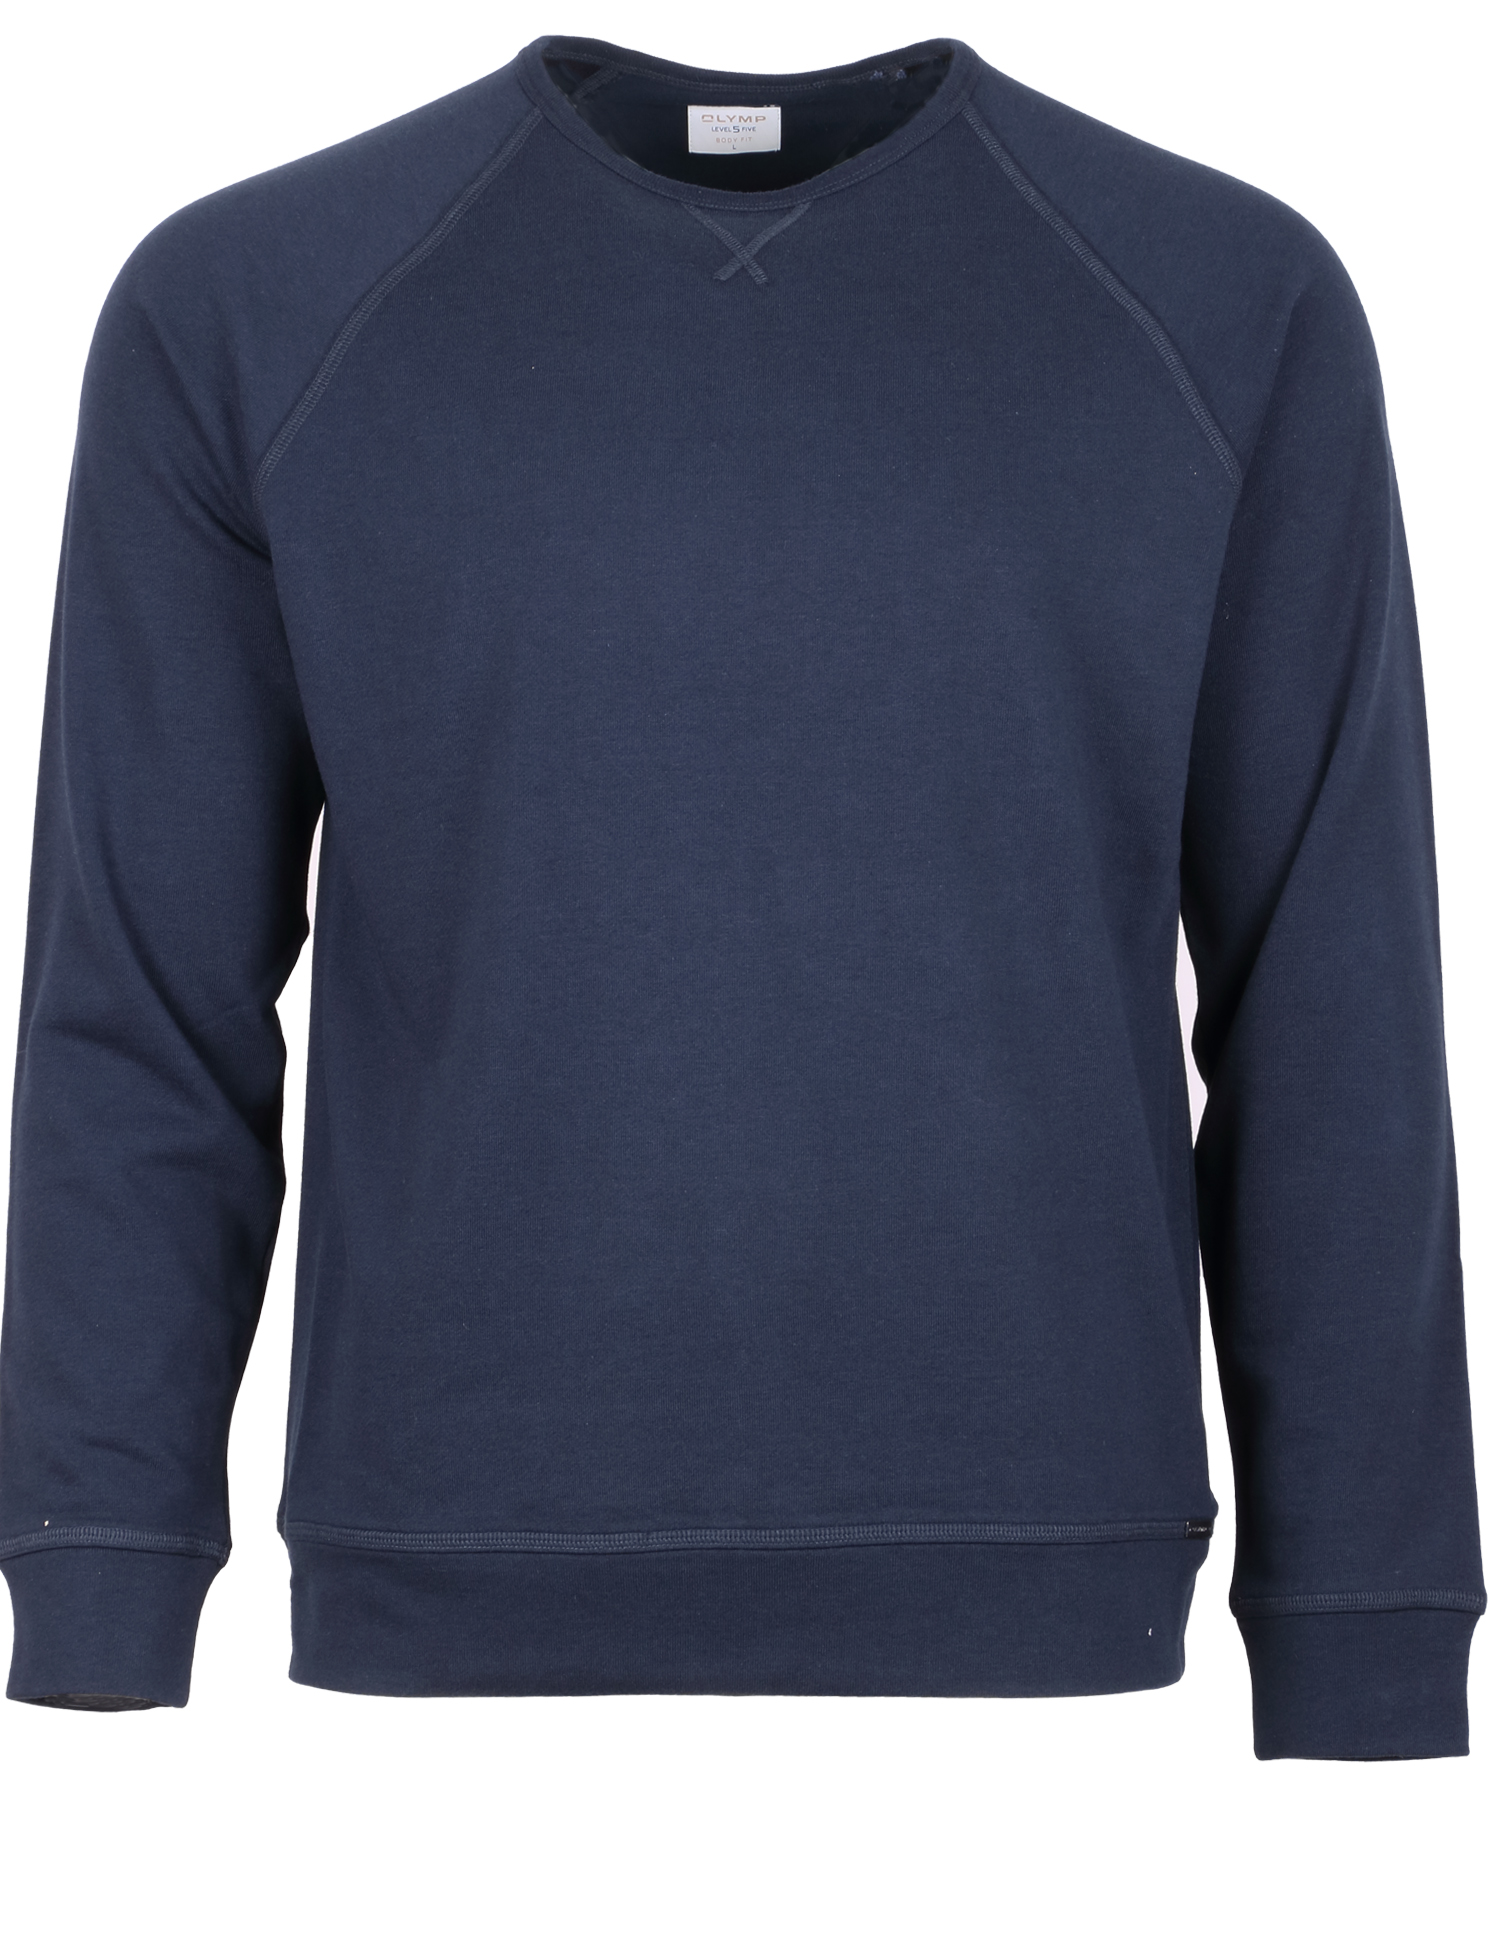 Olymp Level 5 Sweatshirt - dunkelblau XL